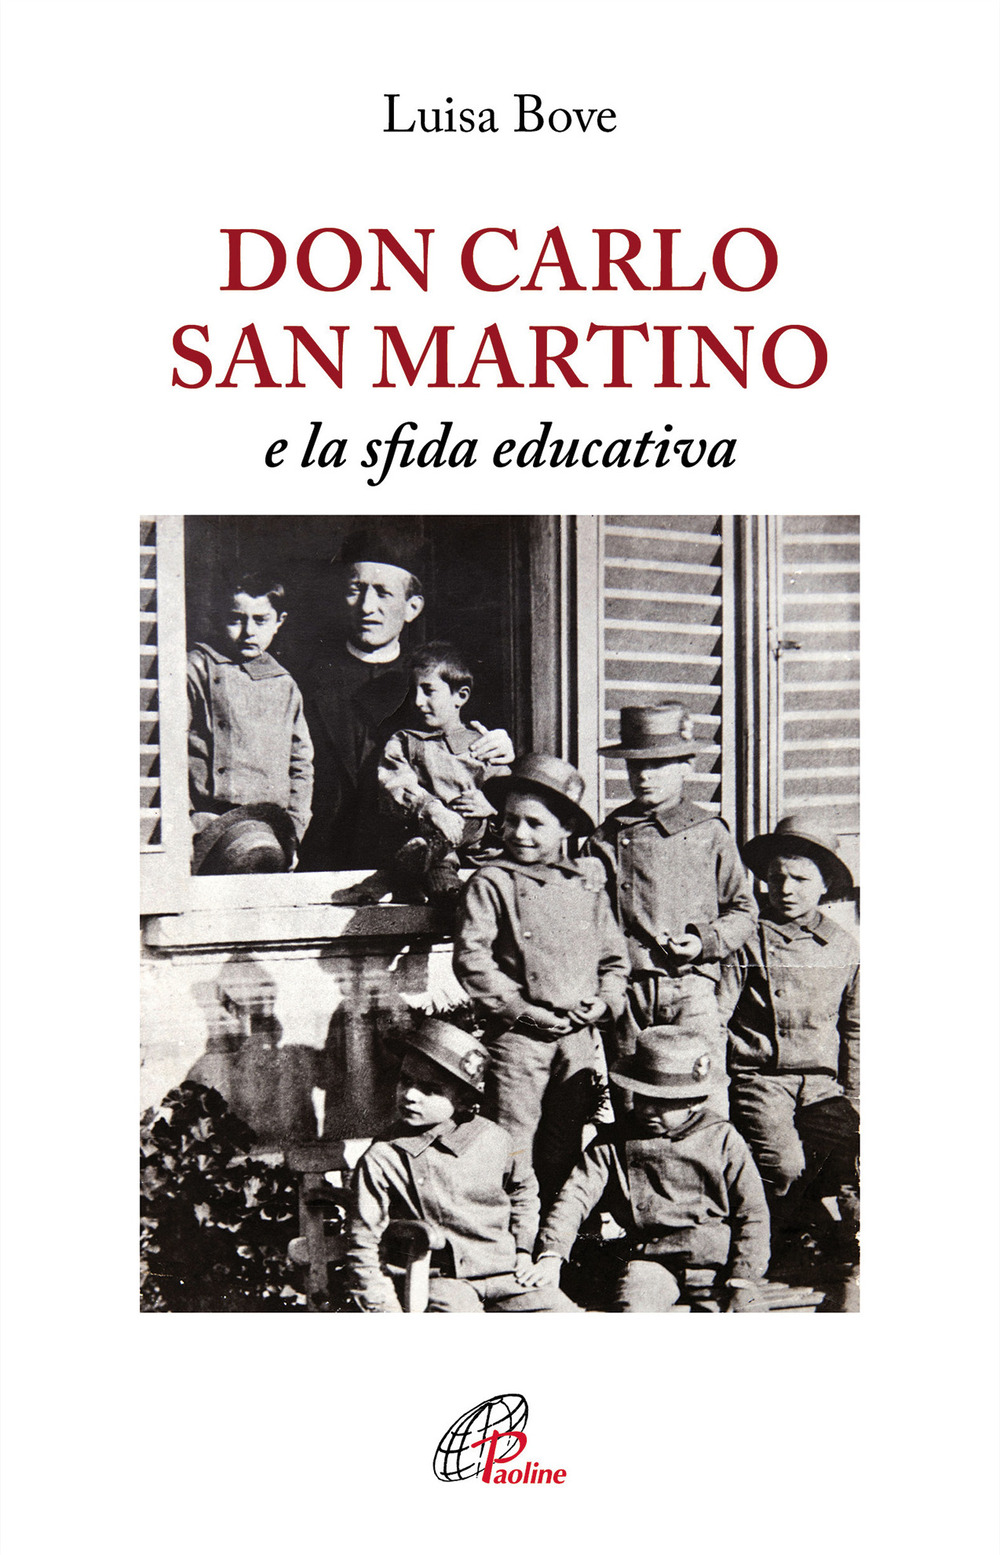 Image of Don Carlo San Martino e la sfida educativa